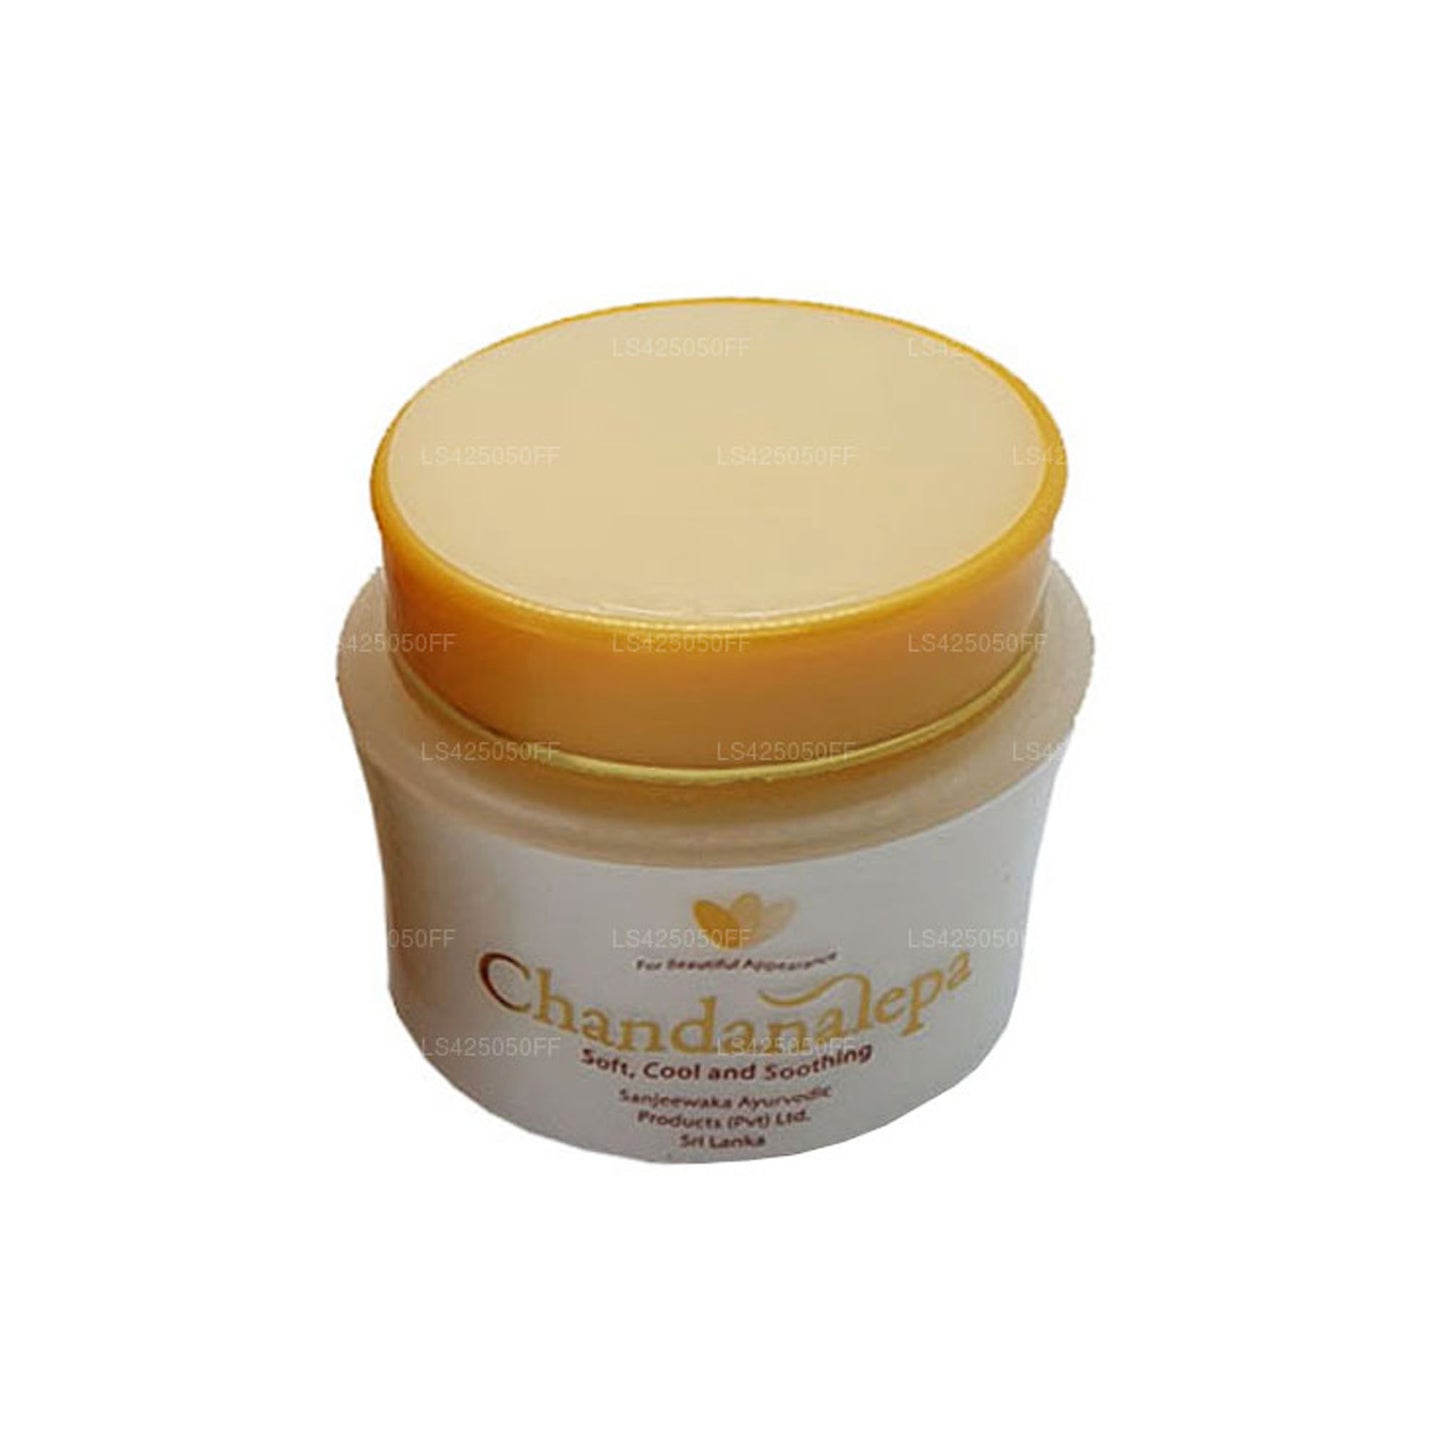 Chandanalepa Herbal Cream